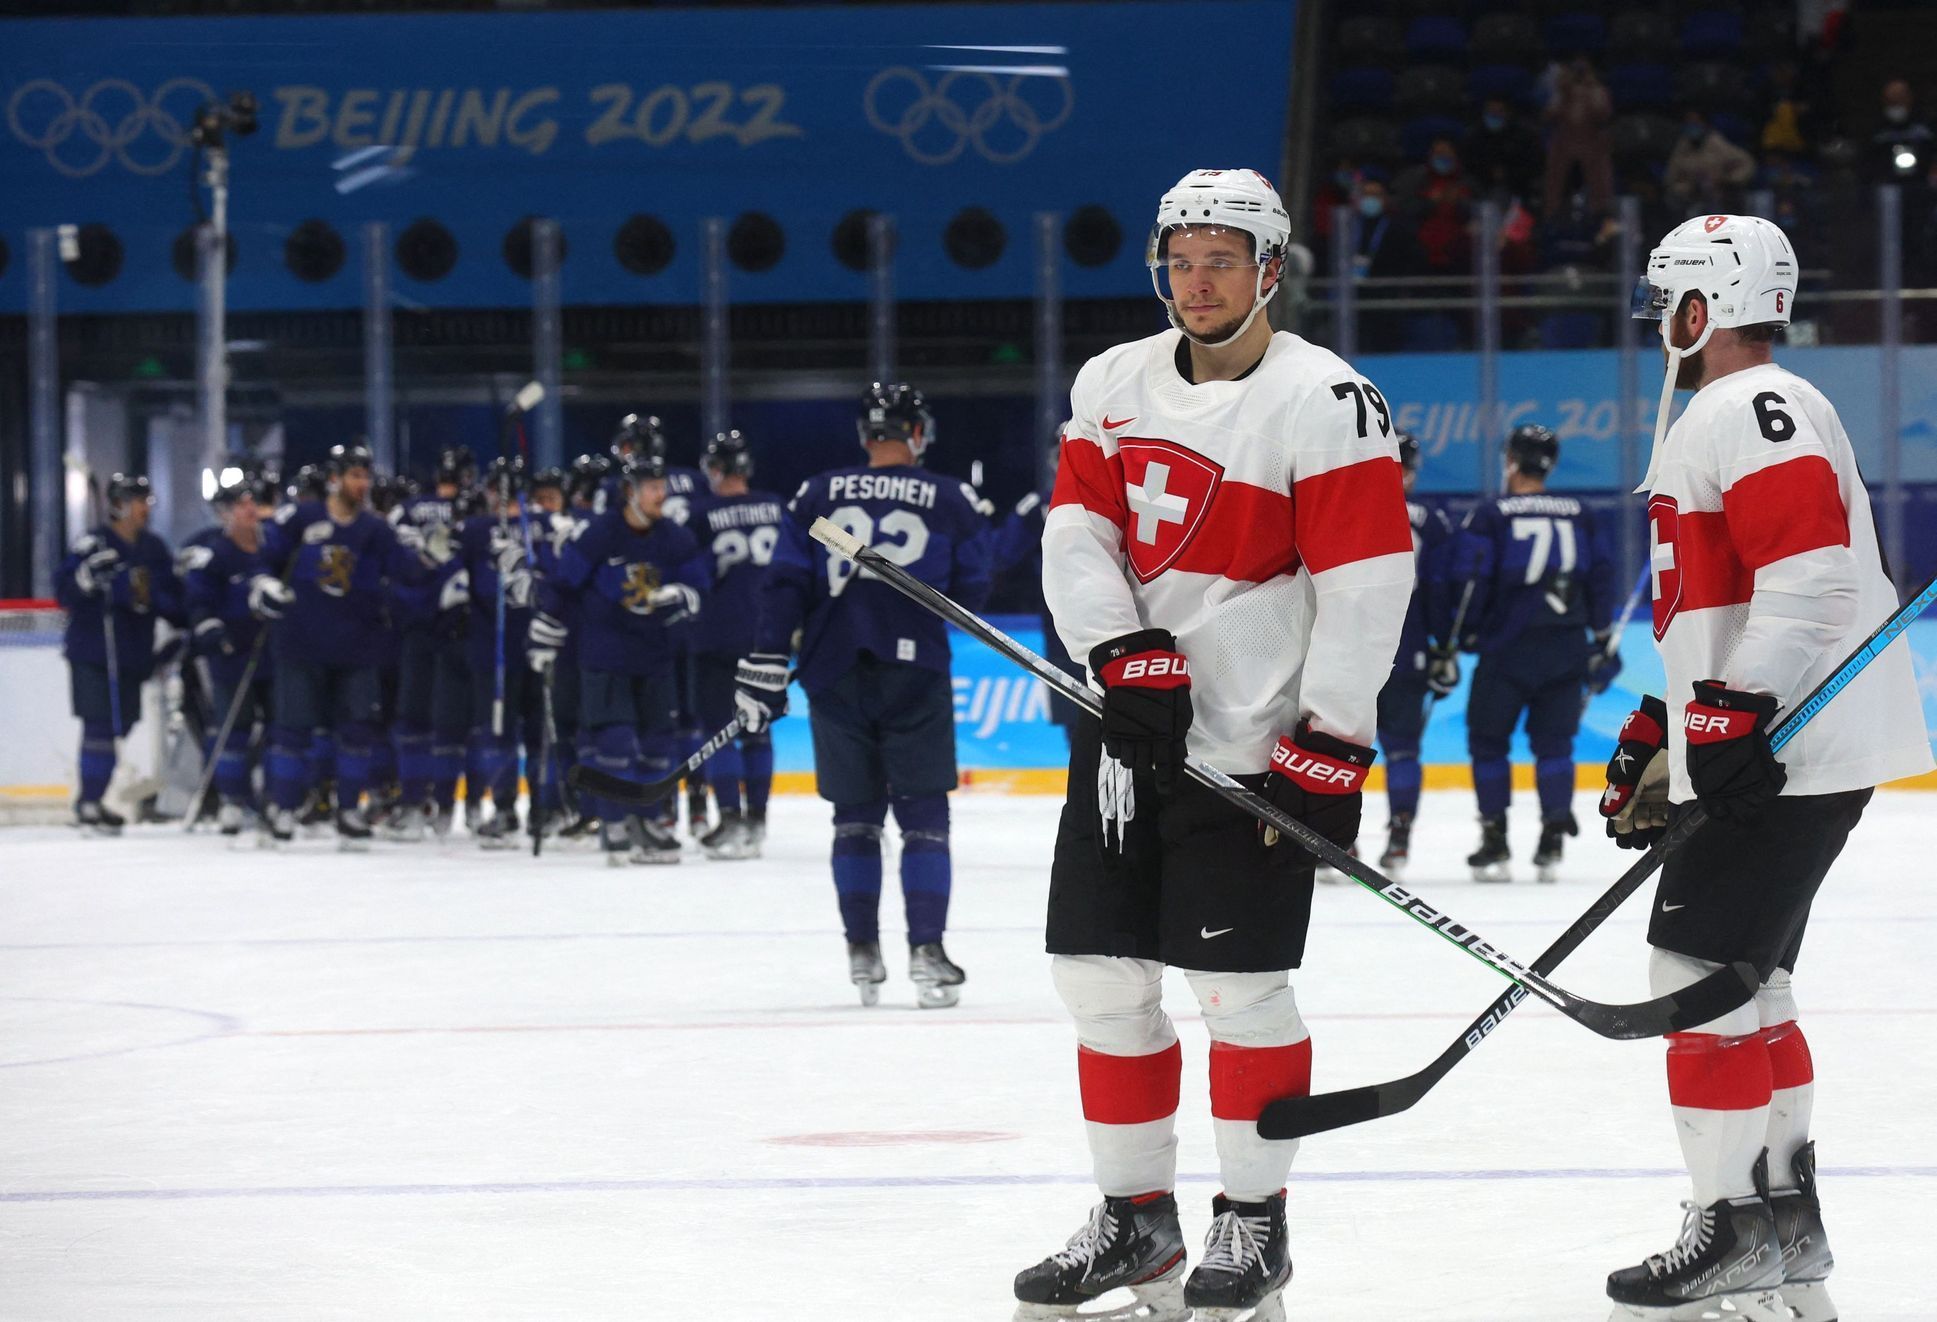 Ice Hockey - Men's Play-offs Quarterfinals - Finland v Switzerland